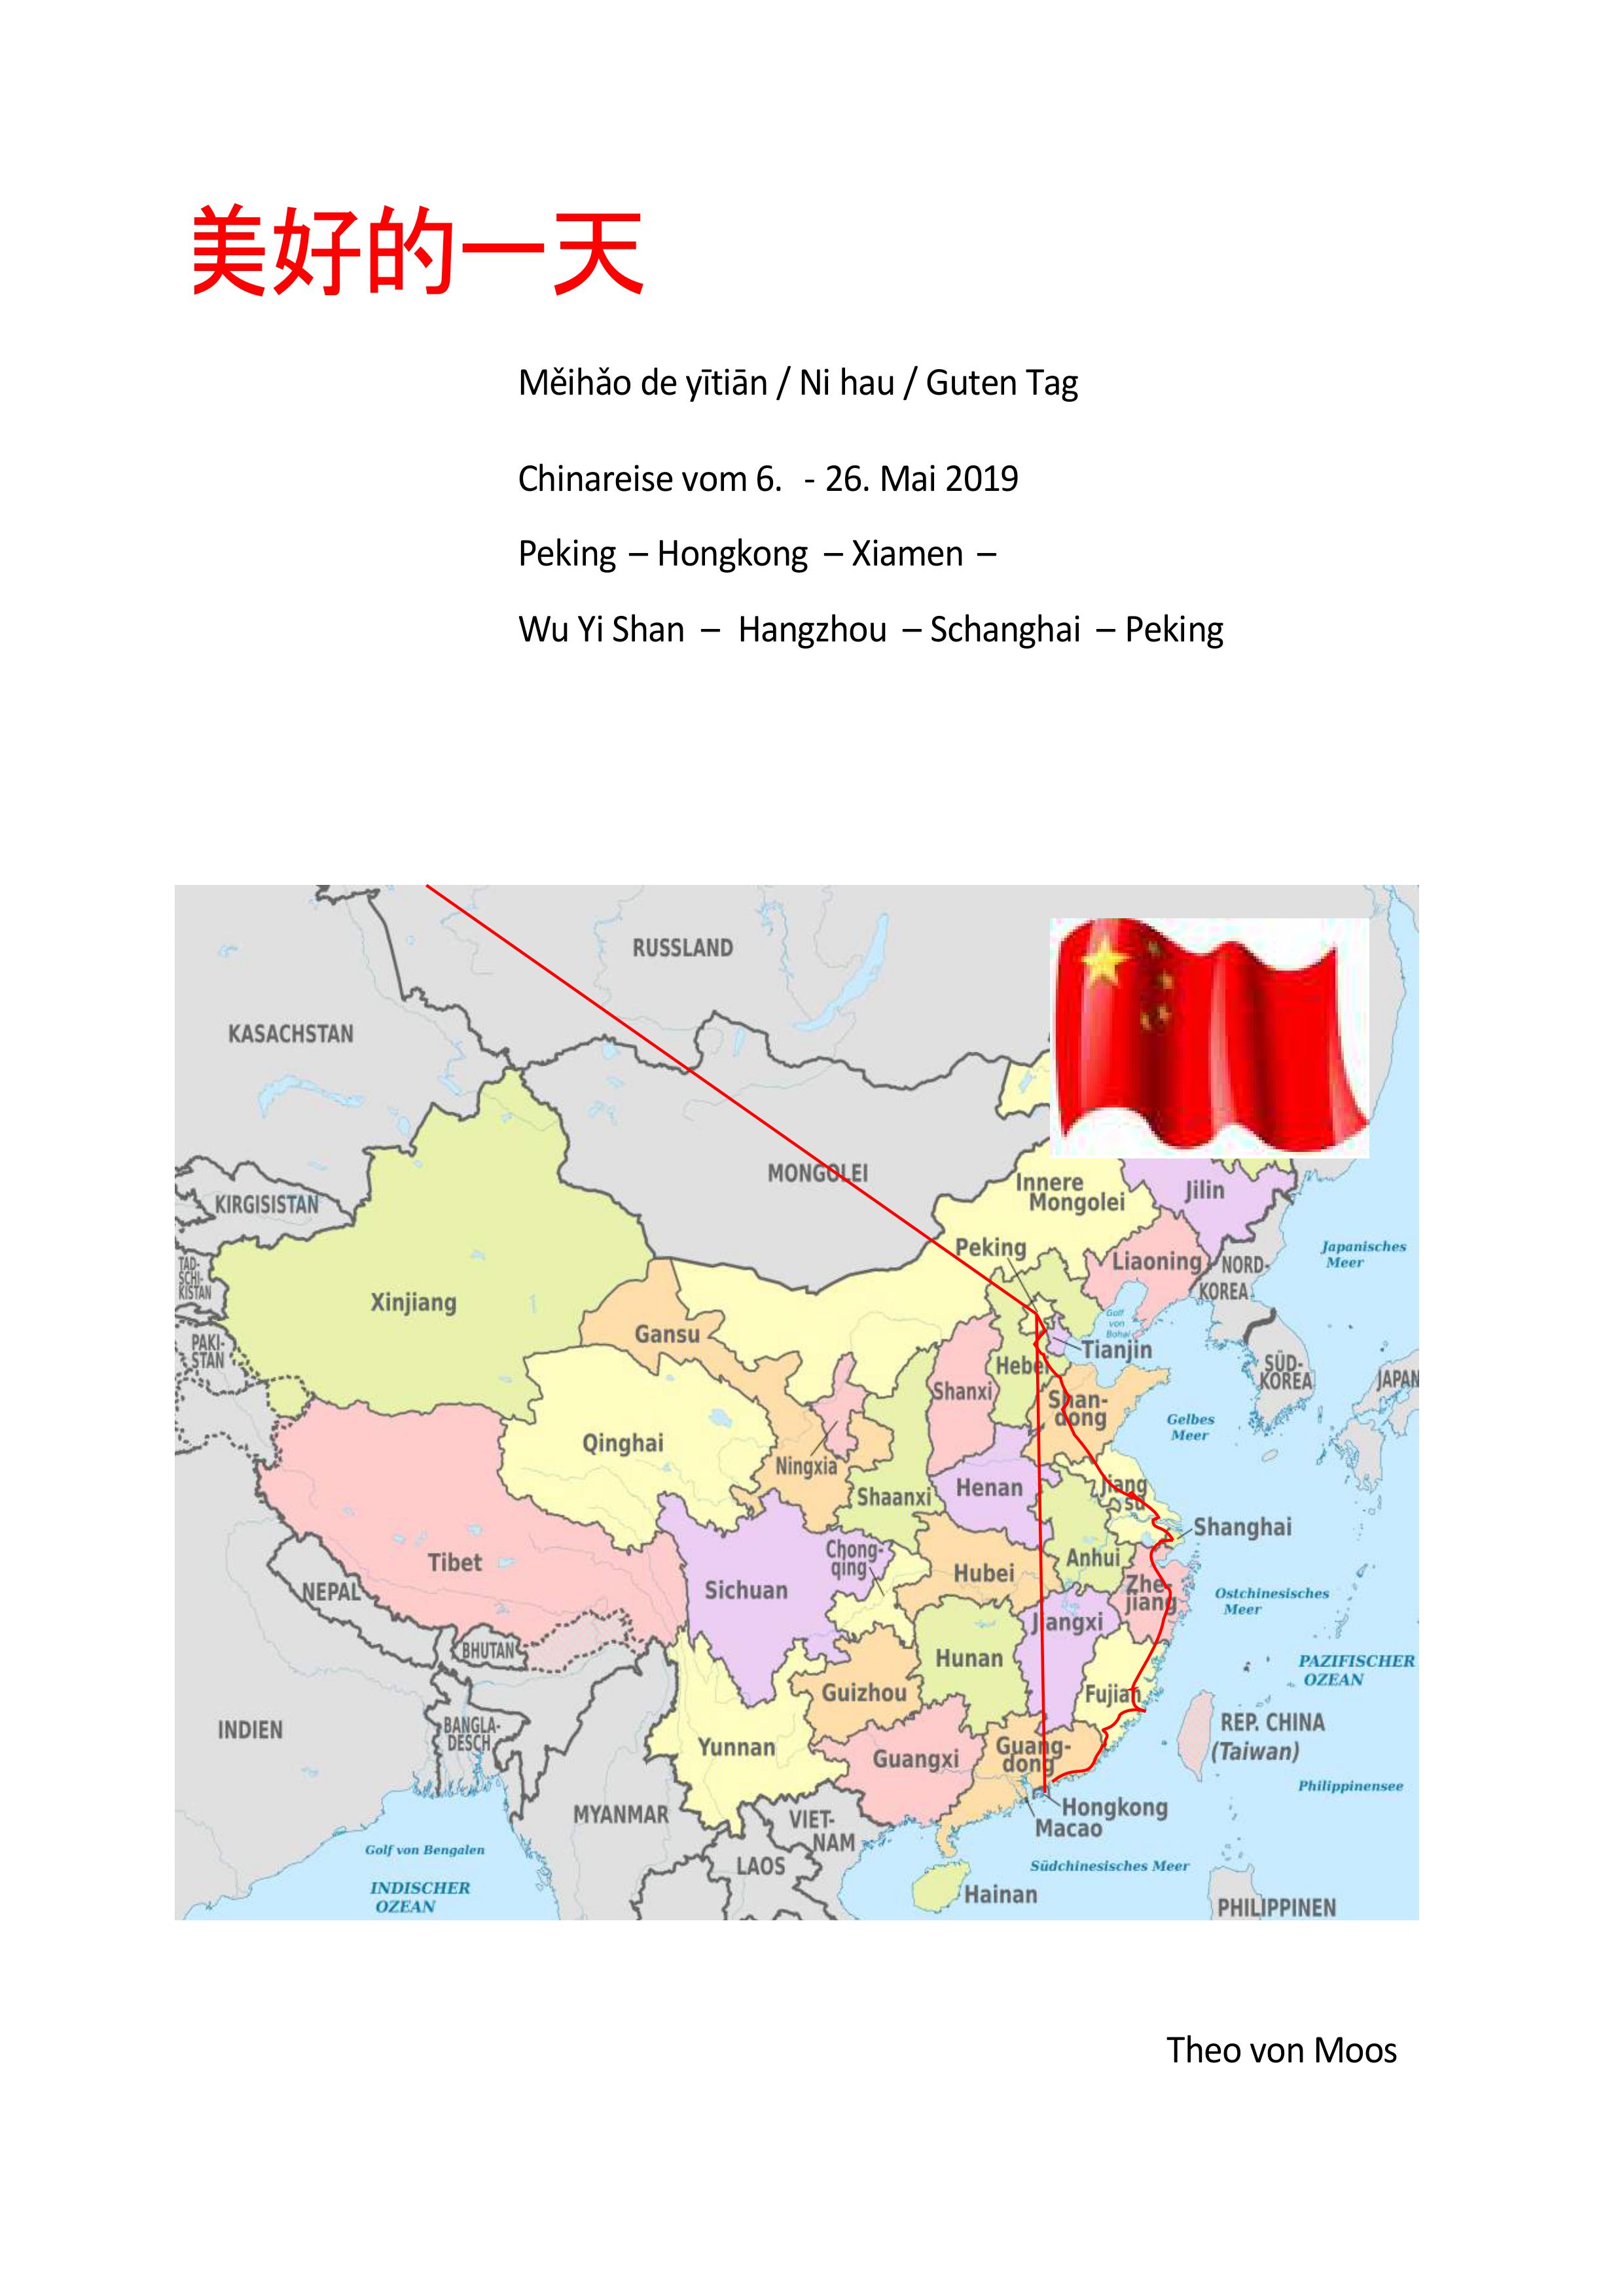 Chinareise-vom-06-26-Mai-2019